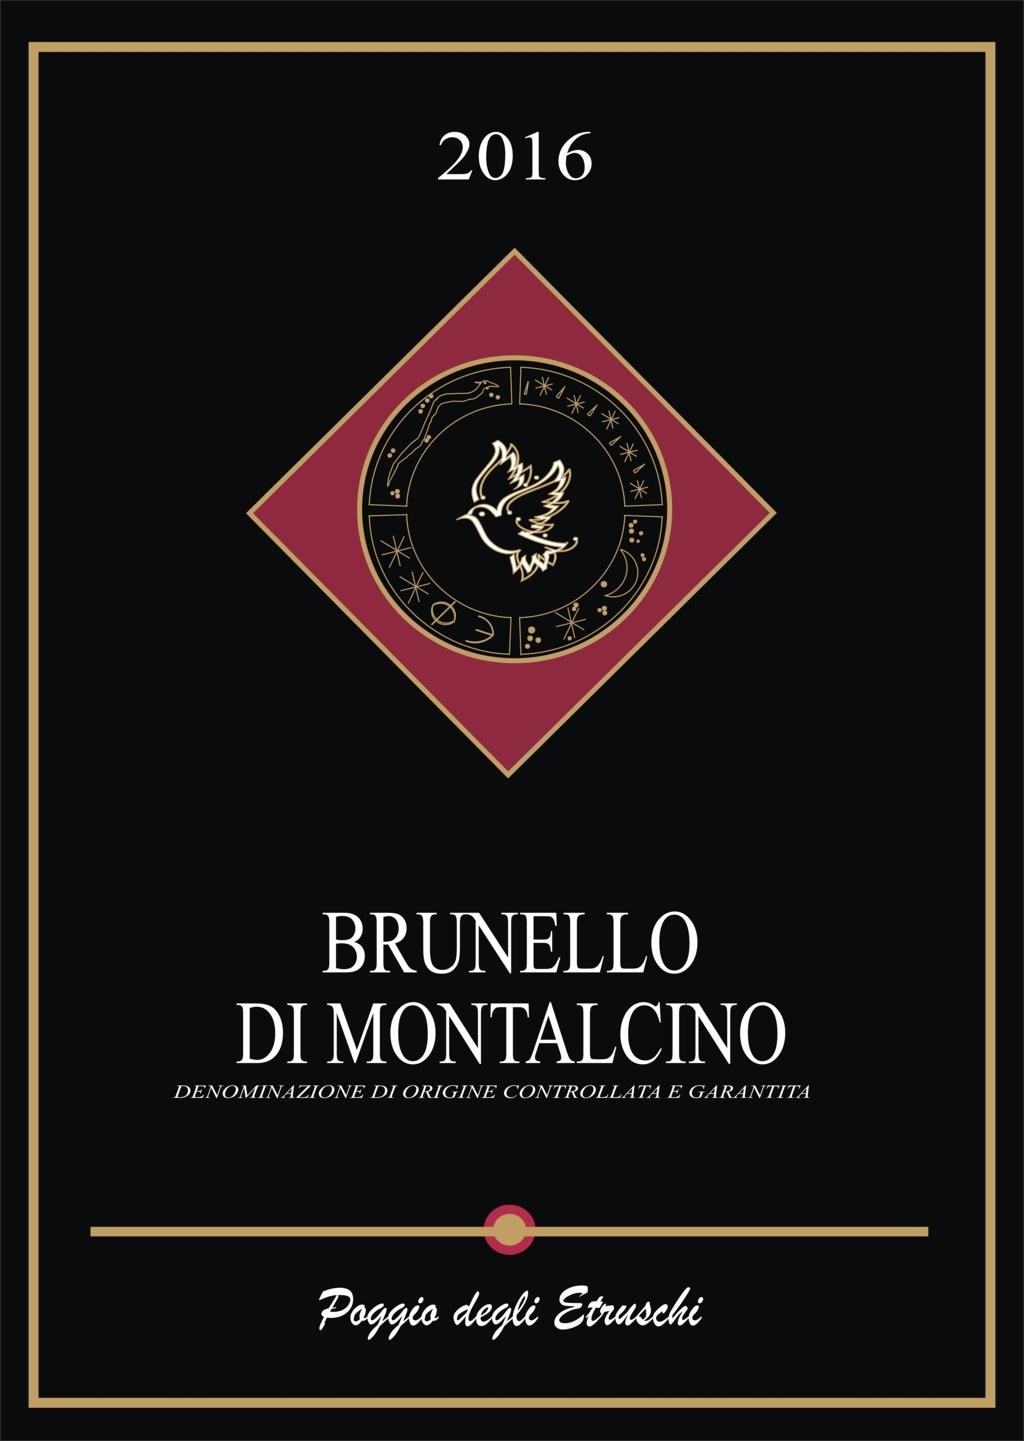 Brunello di Montalcino D.O.C.G.